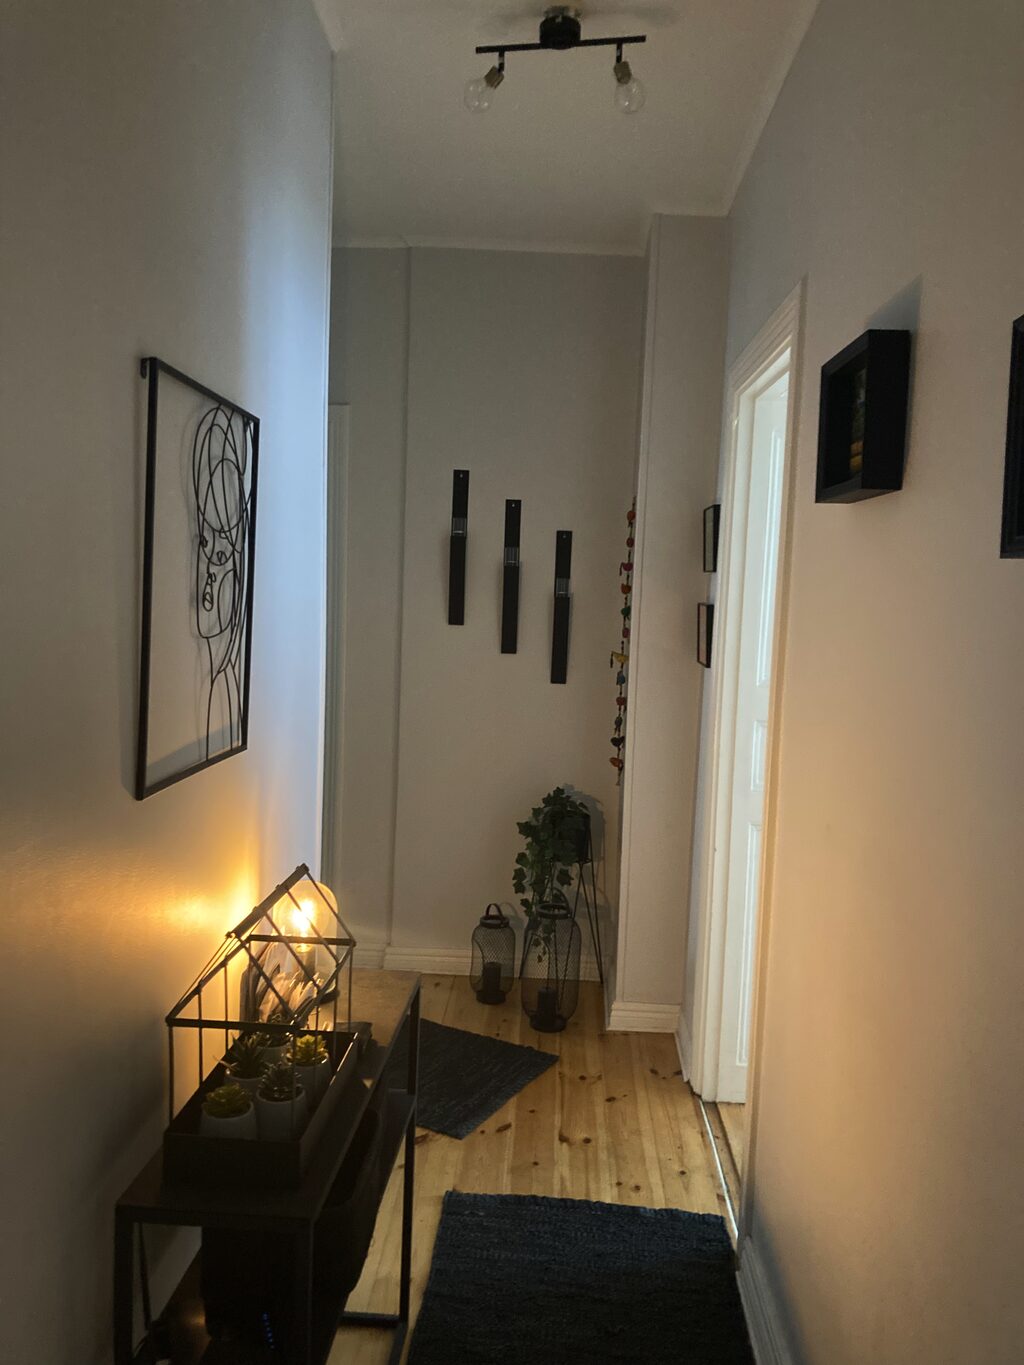 Lägenhetsbyte - Tulegatan 24, 113 53 Stockholm